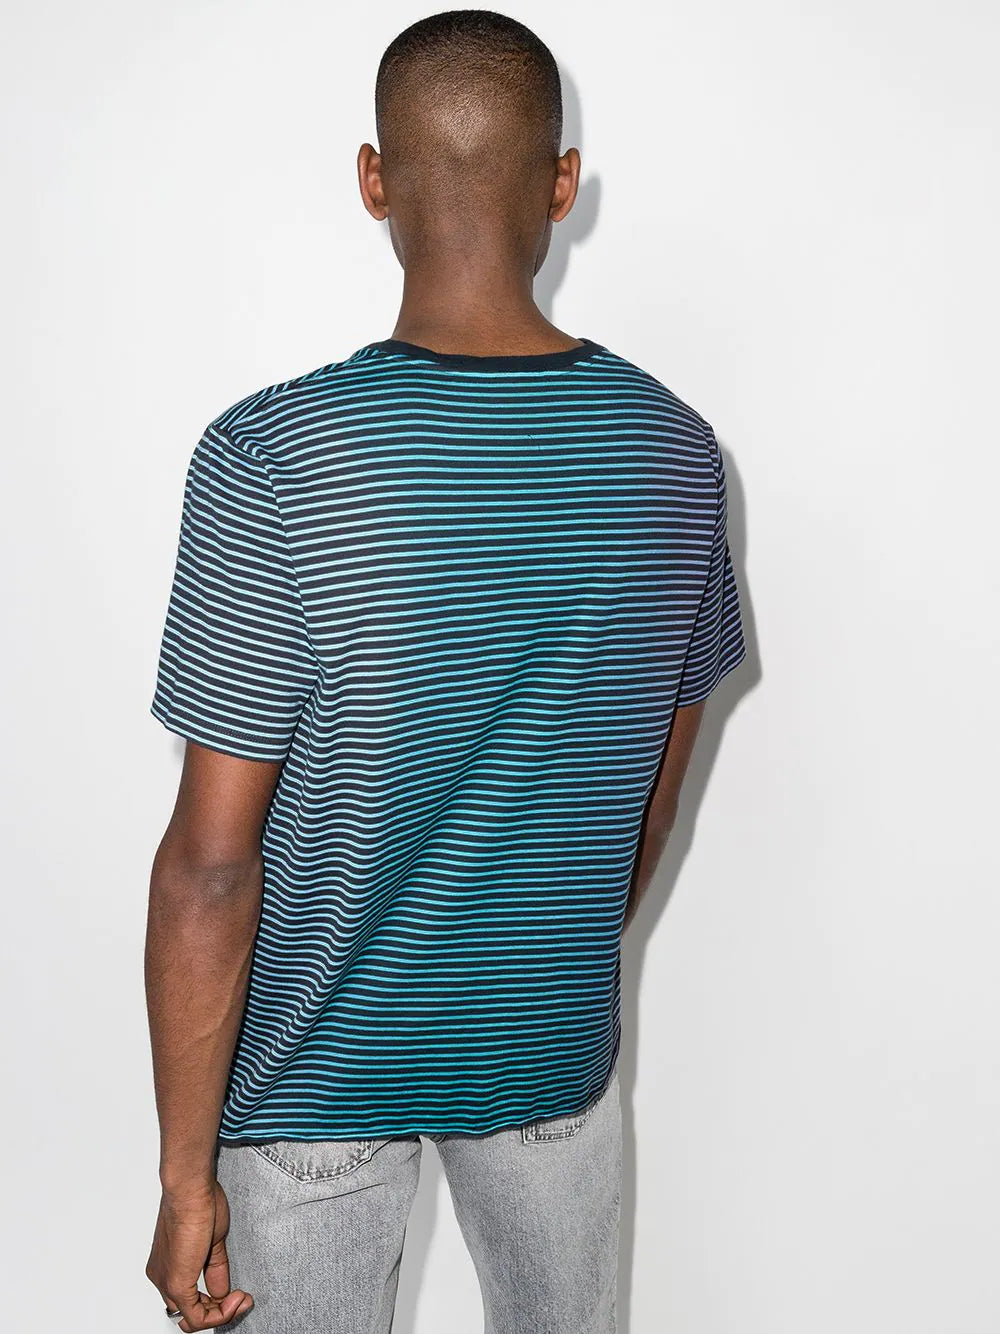 Dégradé Striped T-Shirt